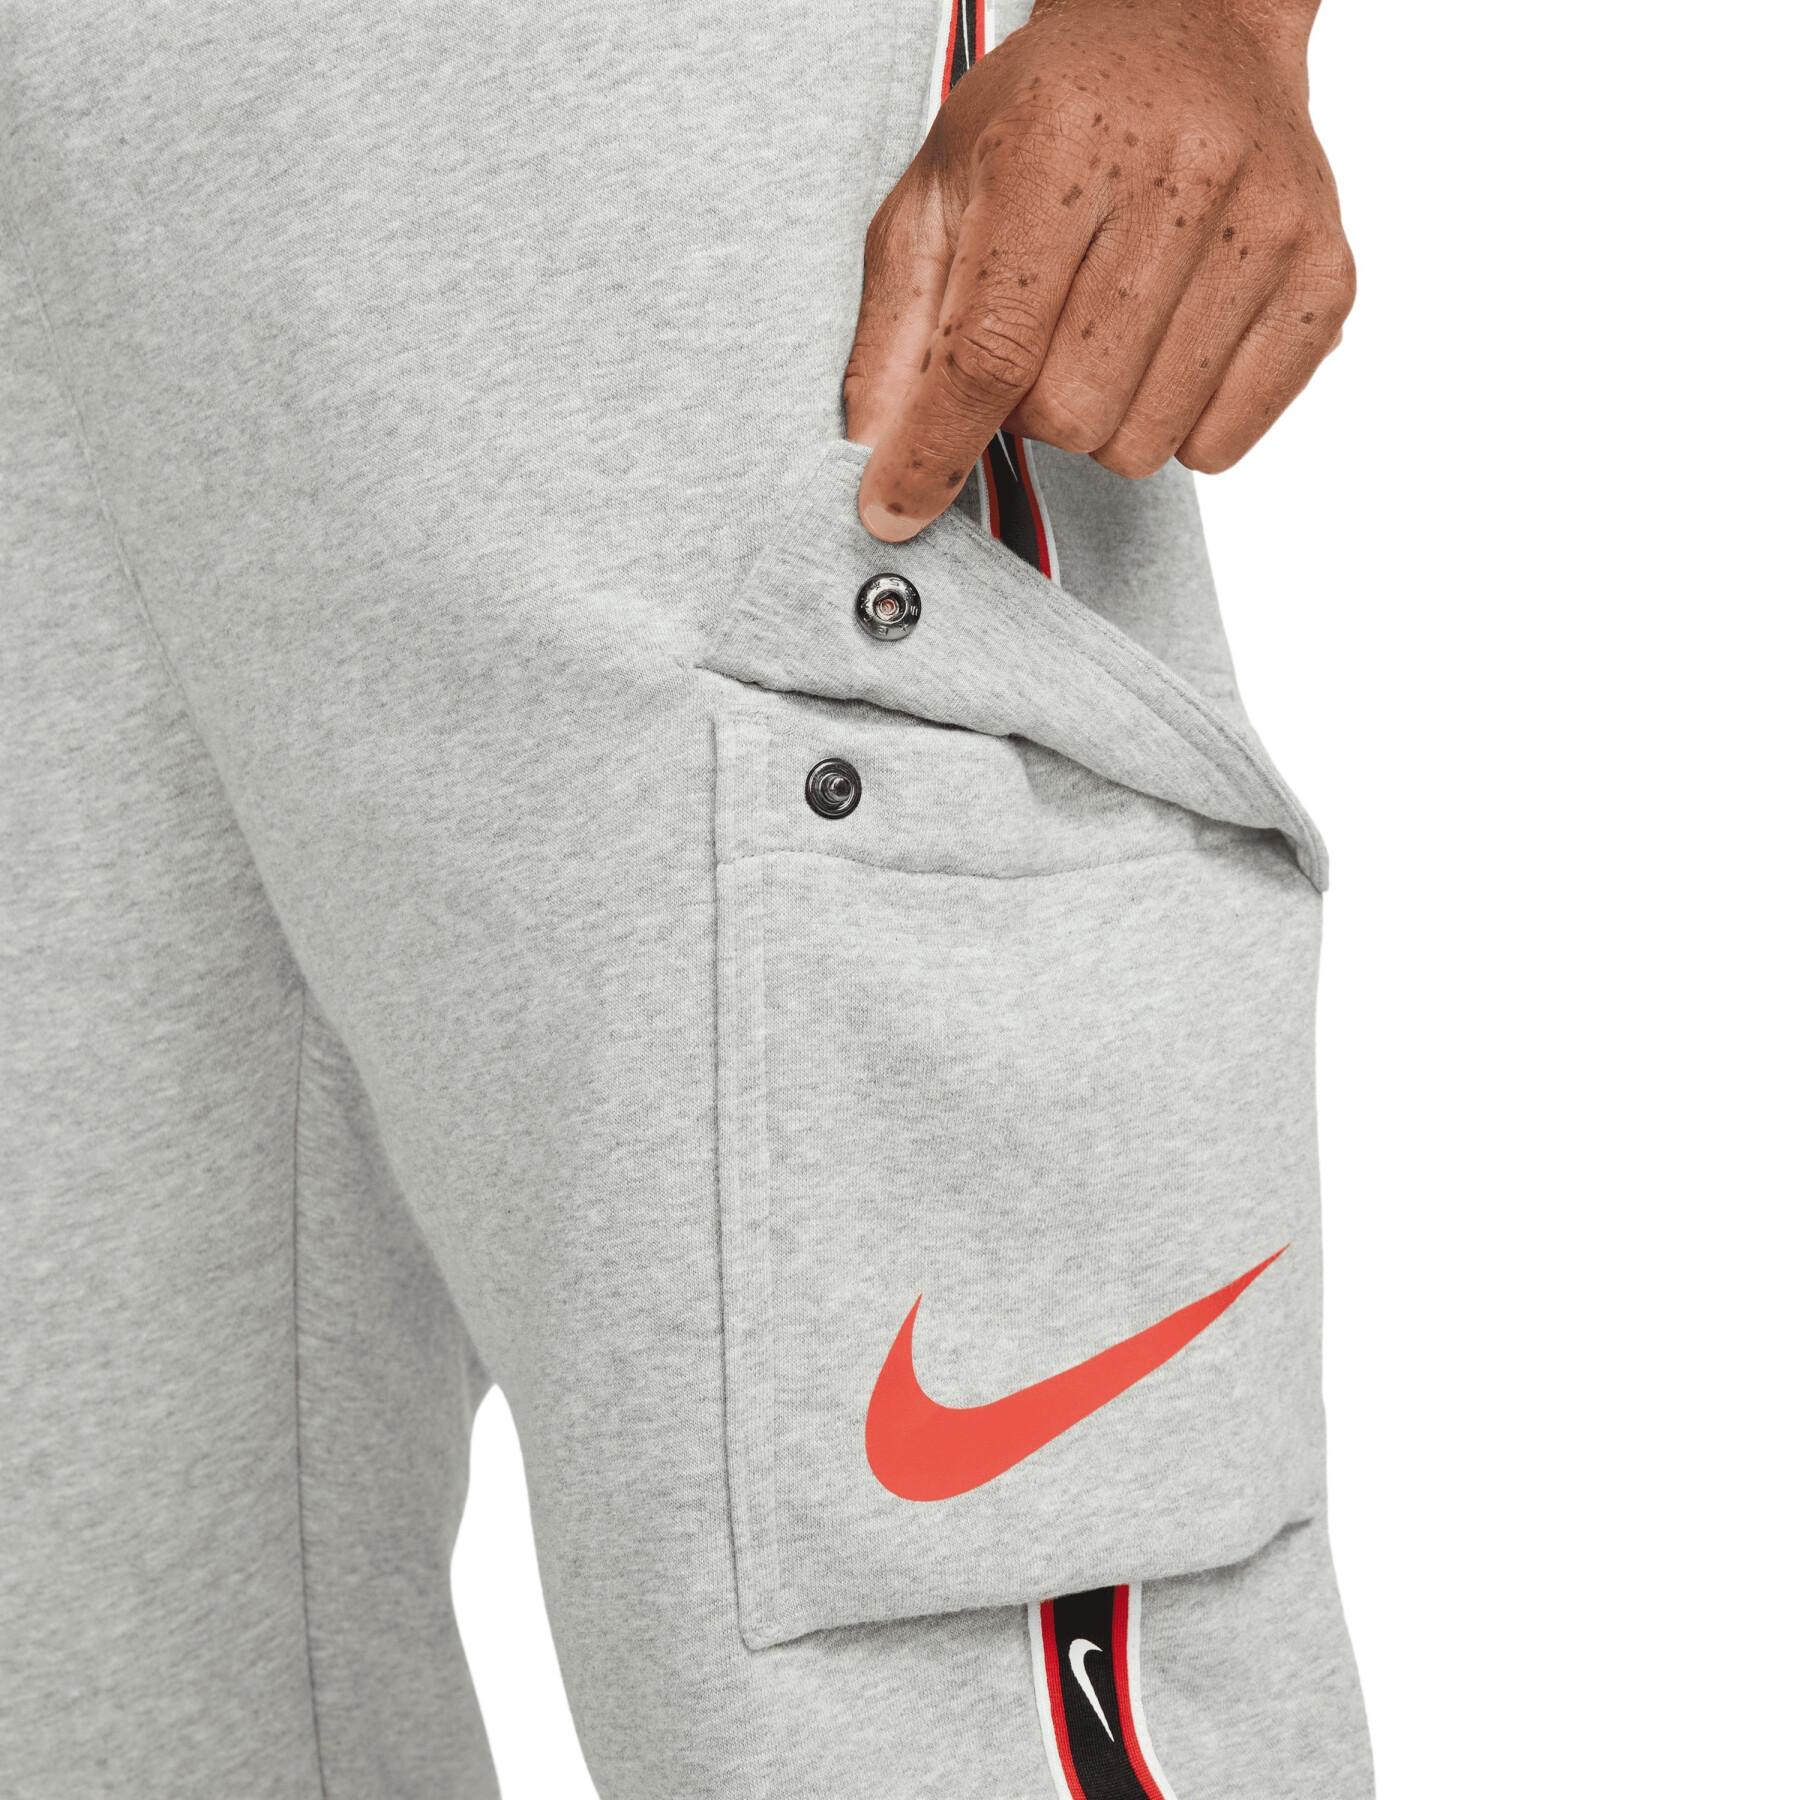 Pantalón de chándal Nike Sportswear Repeat